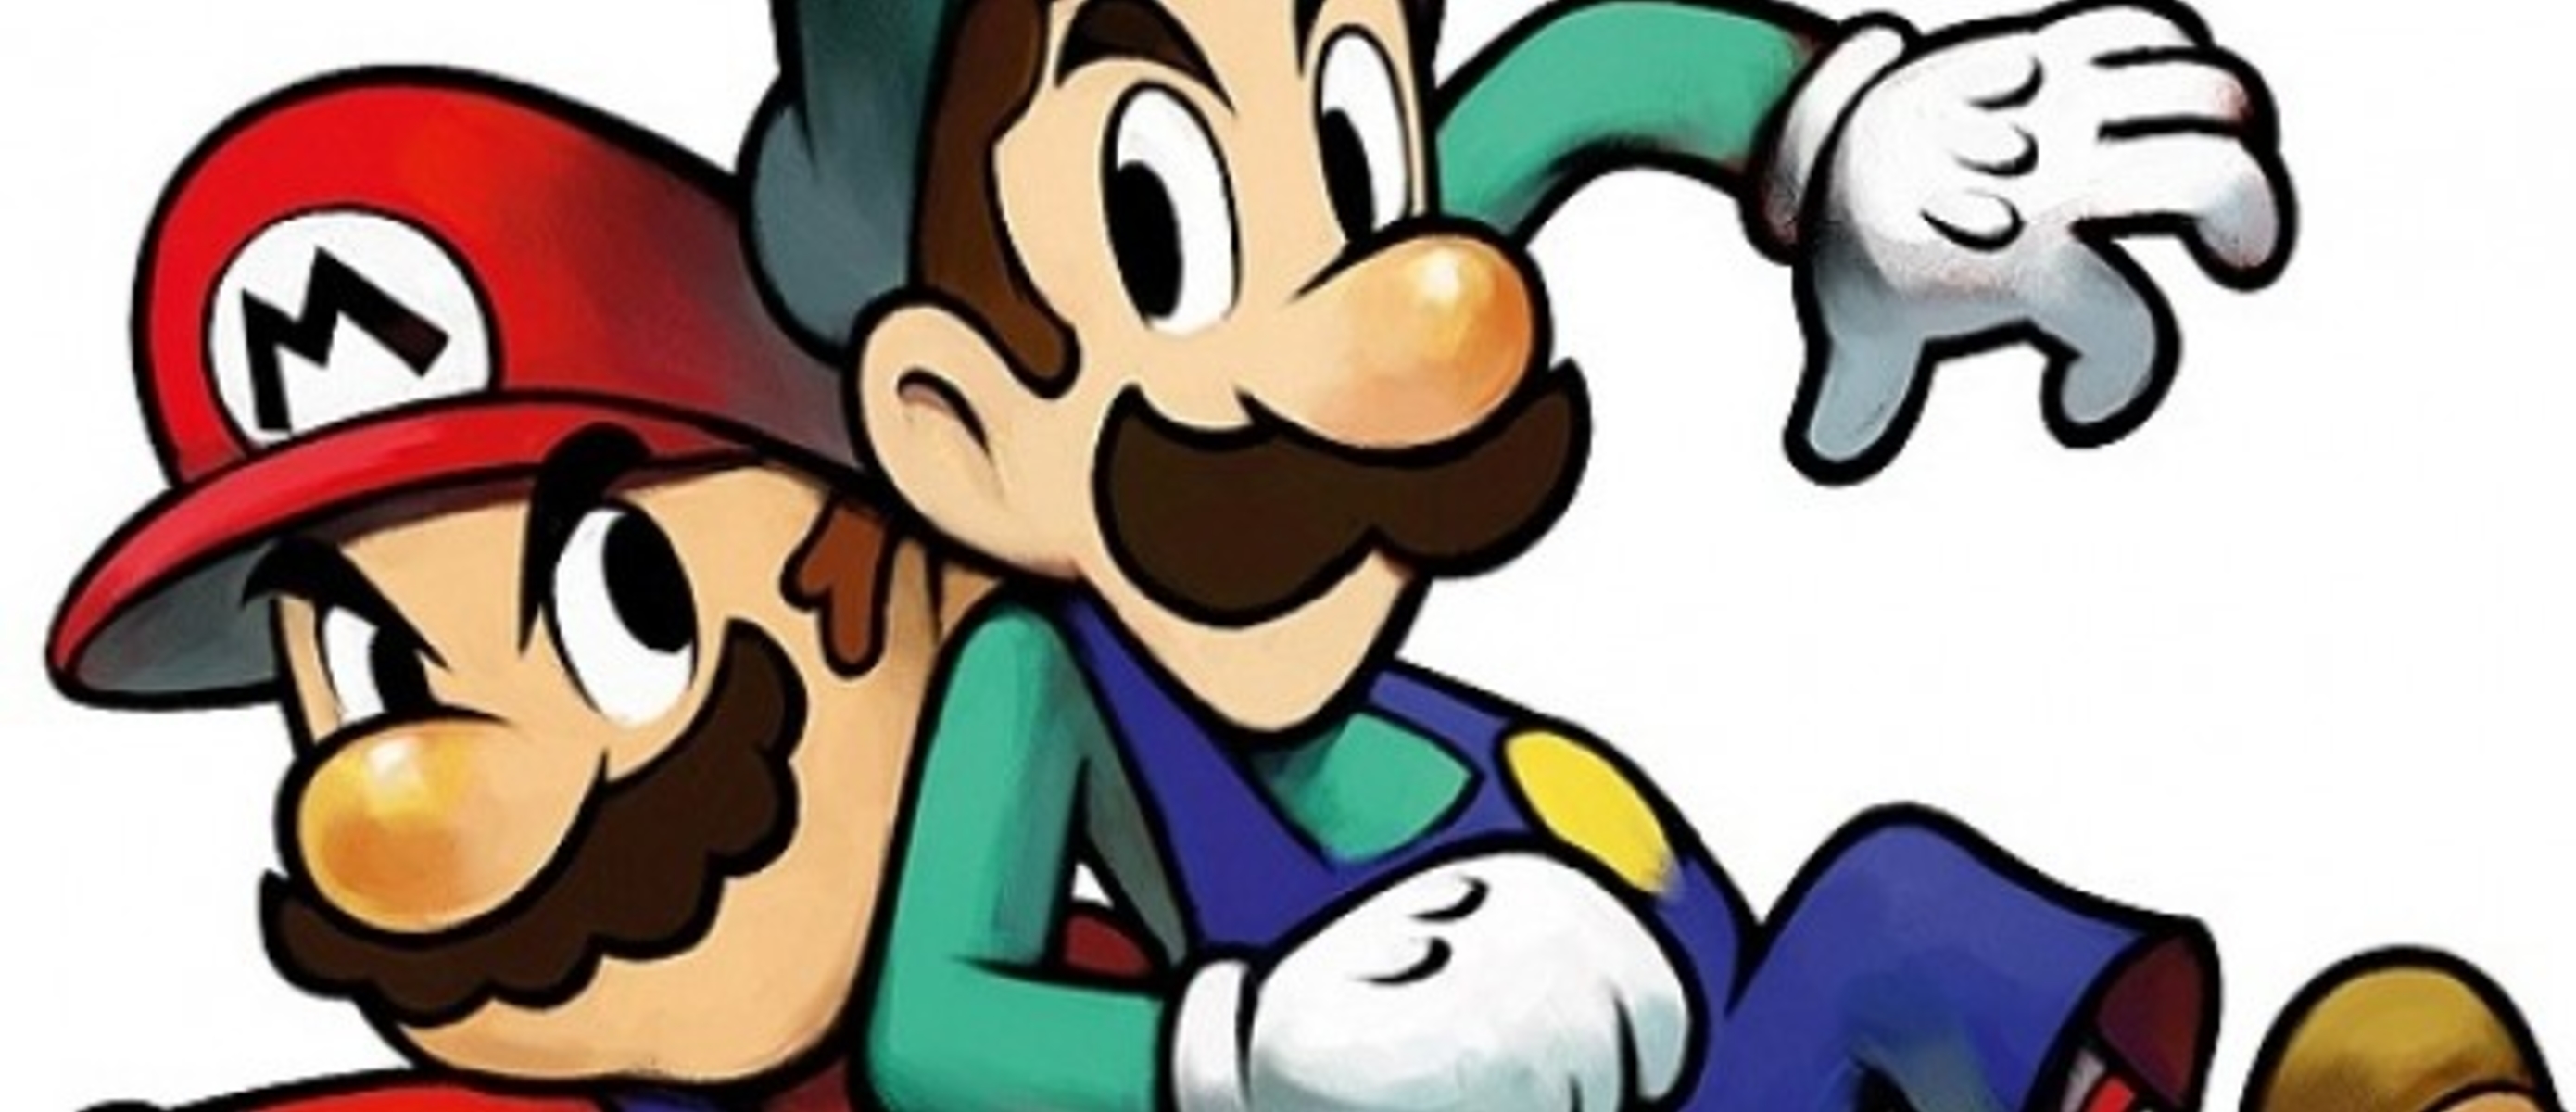 Mario luigi dream team. Марио лицо. Mario "Mario. Go (CD)". Centro Luigi.